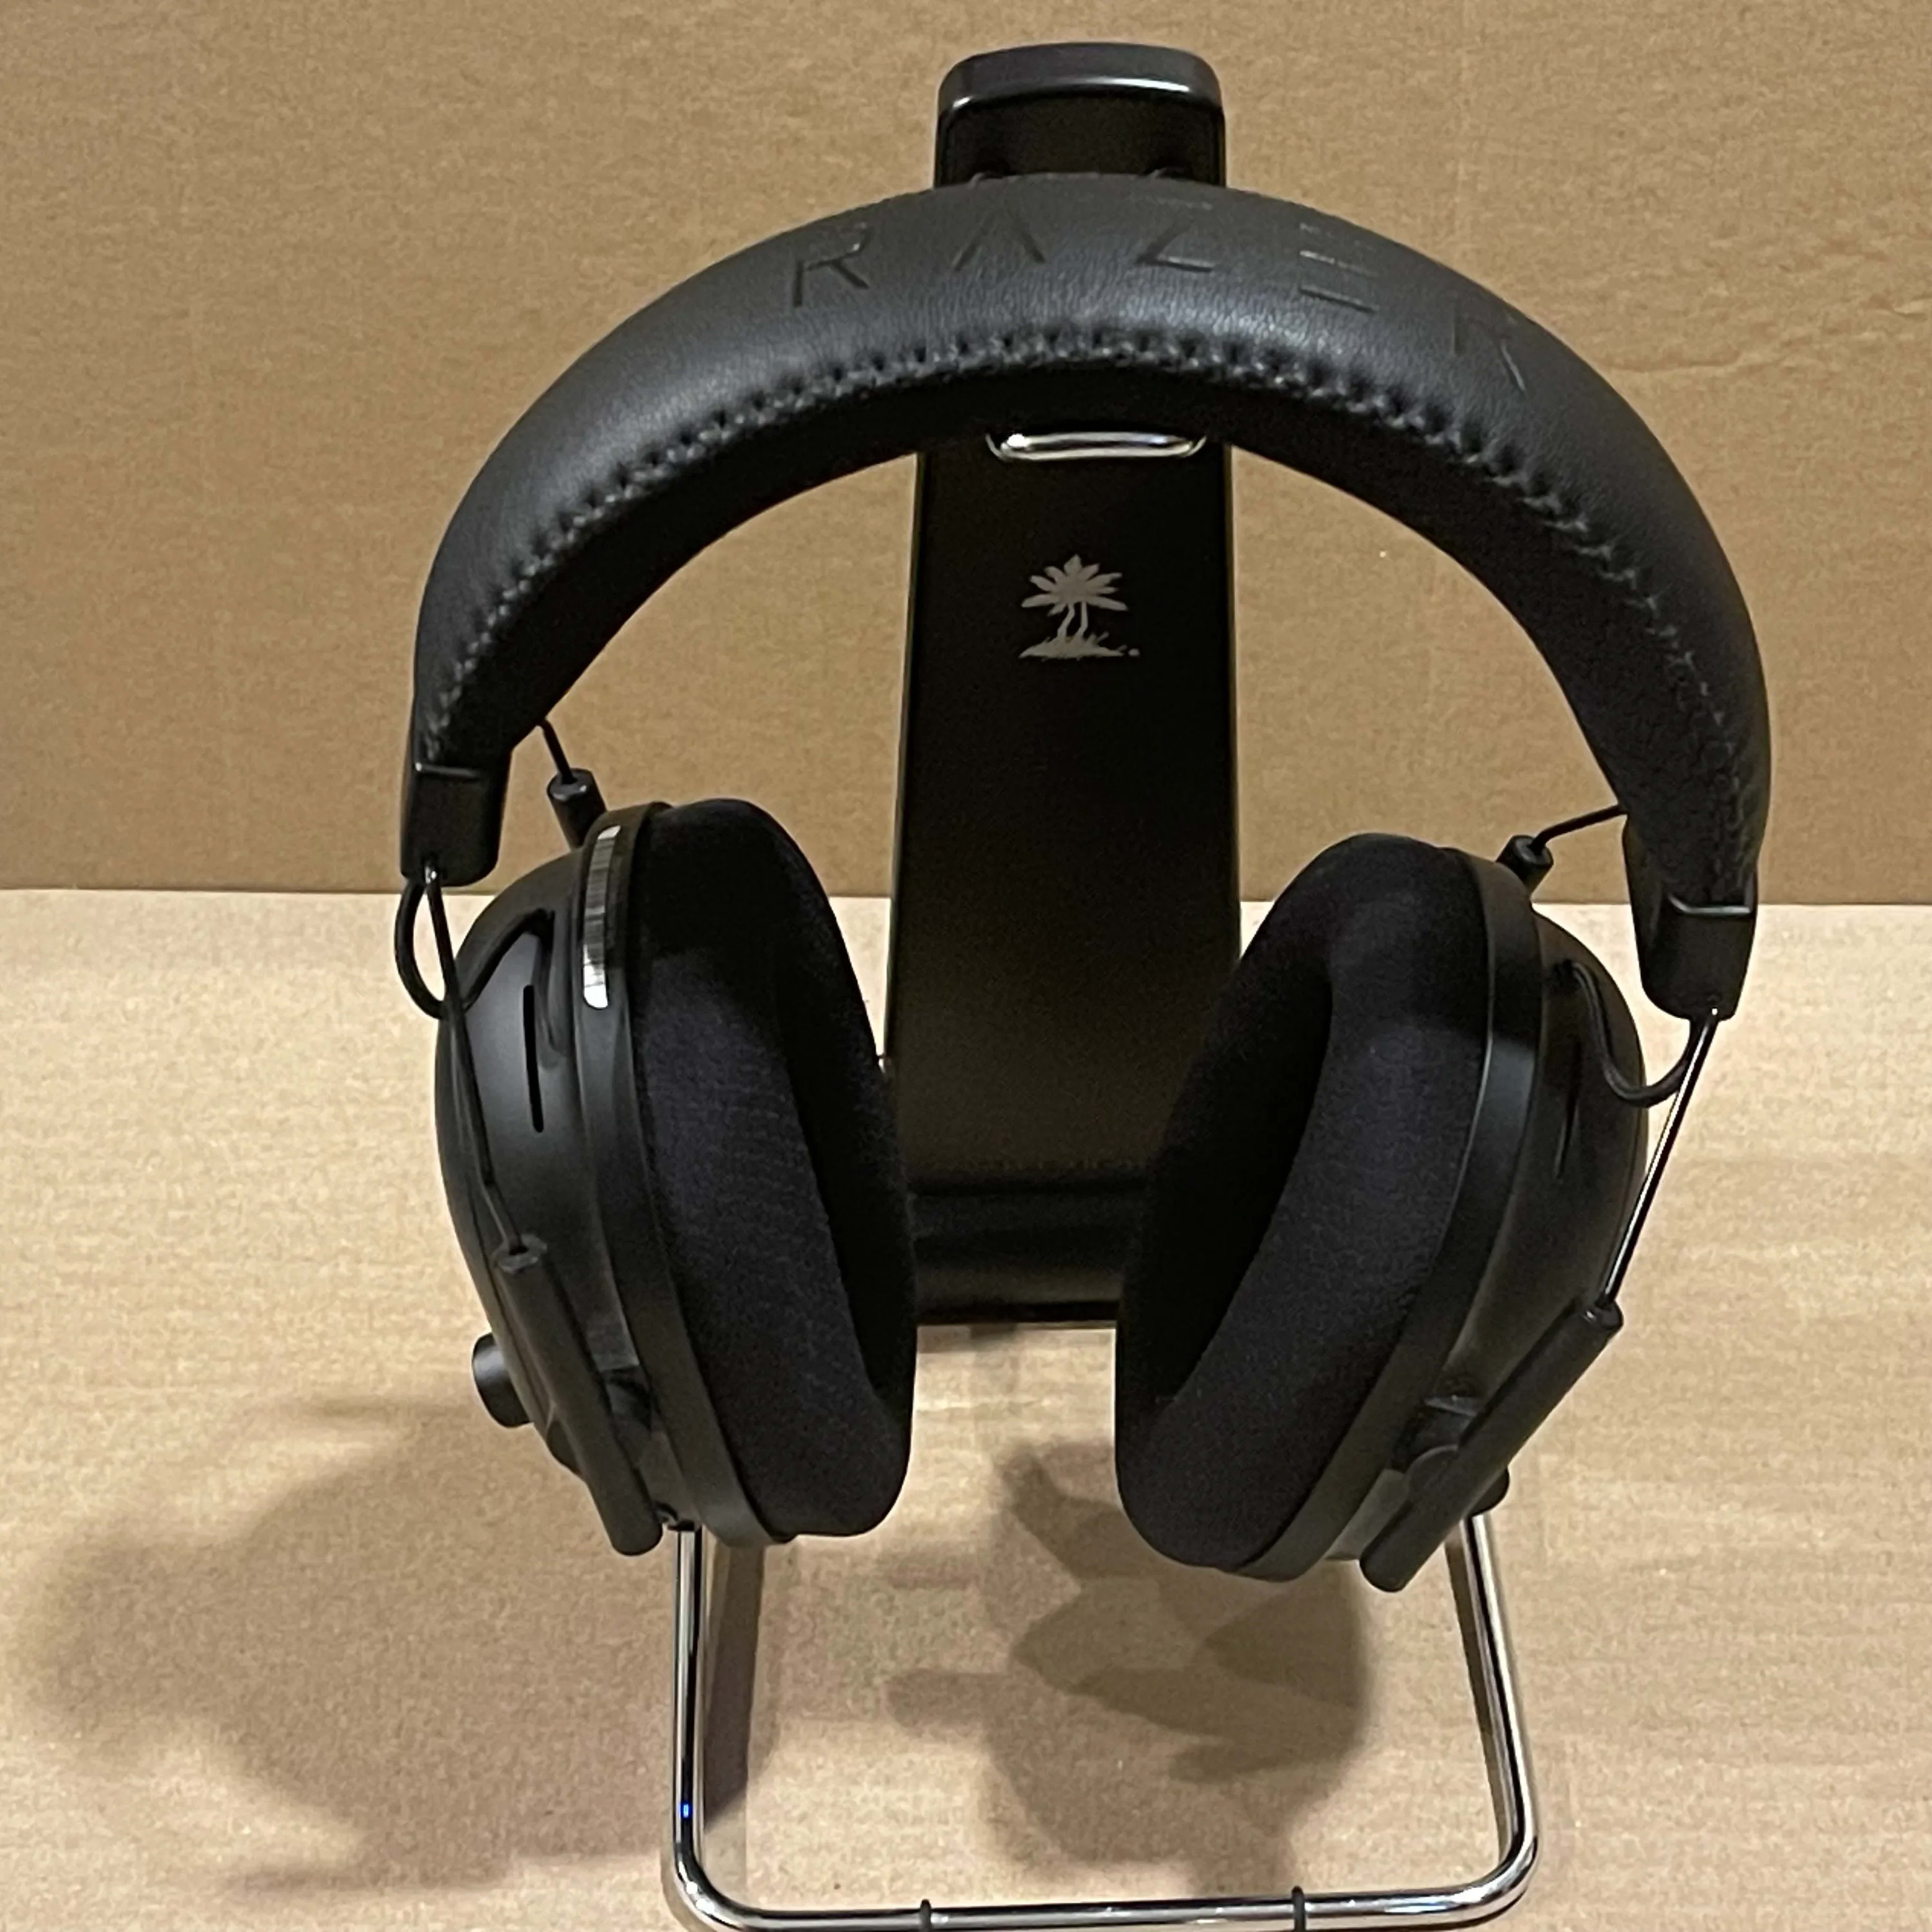 Used, Razer BlackShark V2 Pro Wireless Gaming Headset